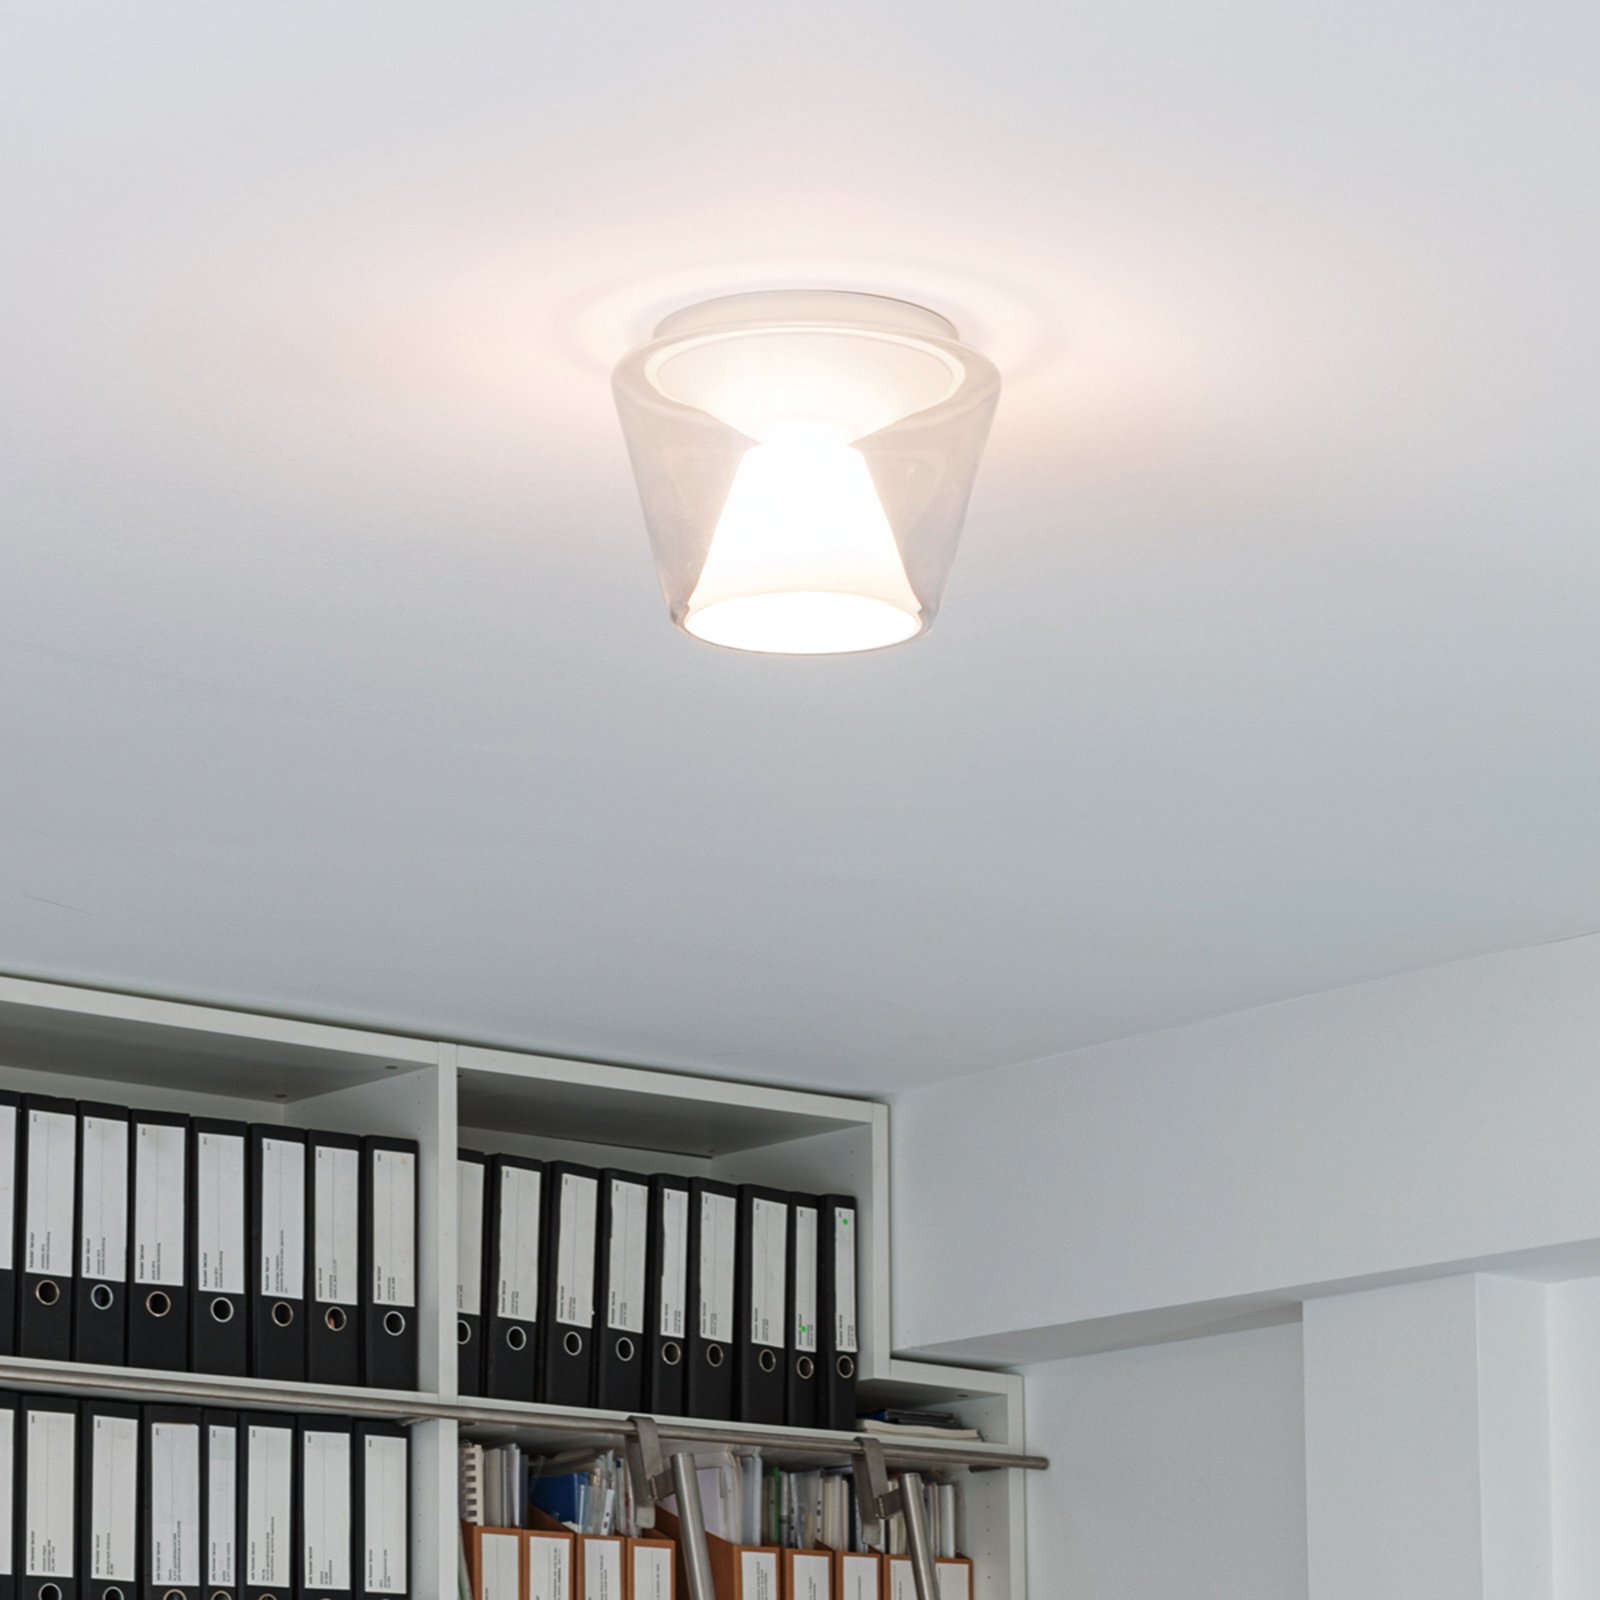 Hand-blown LED designer ceiling light Annex